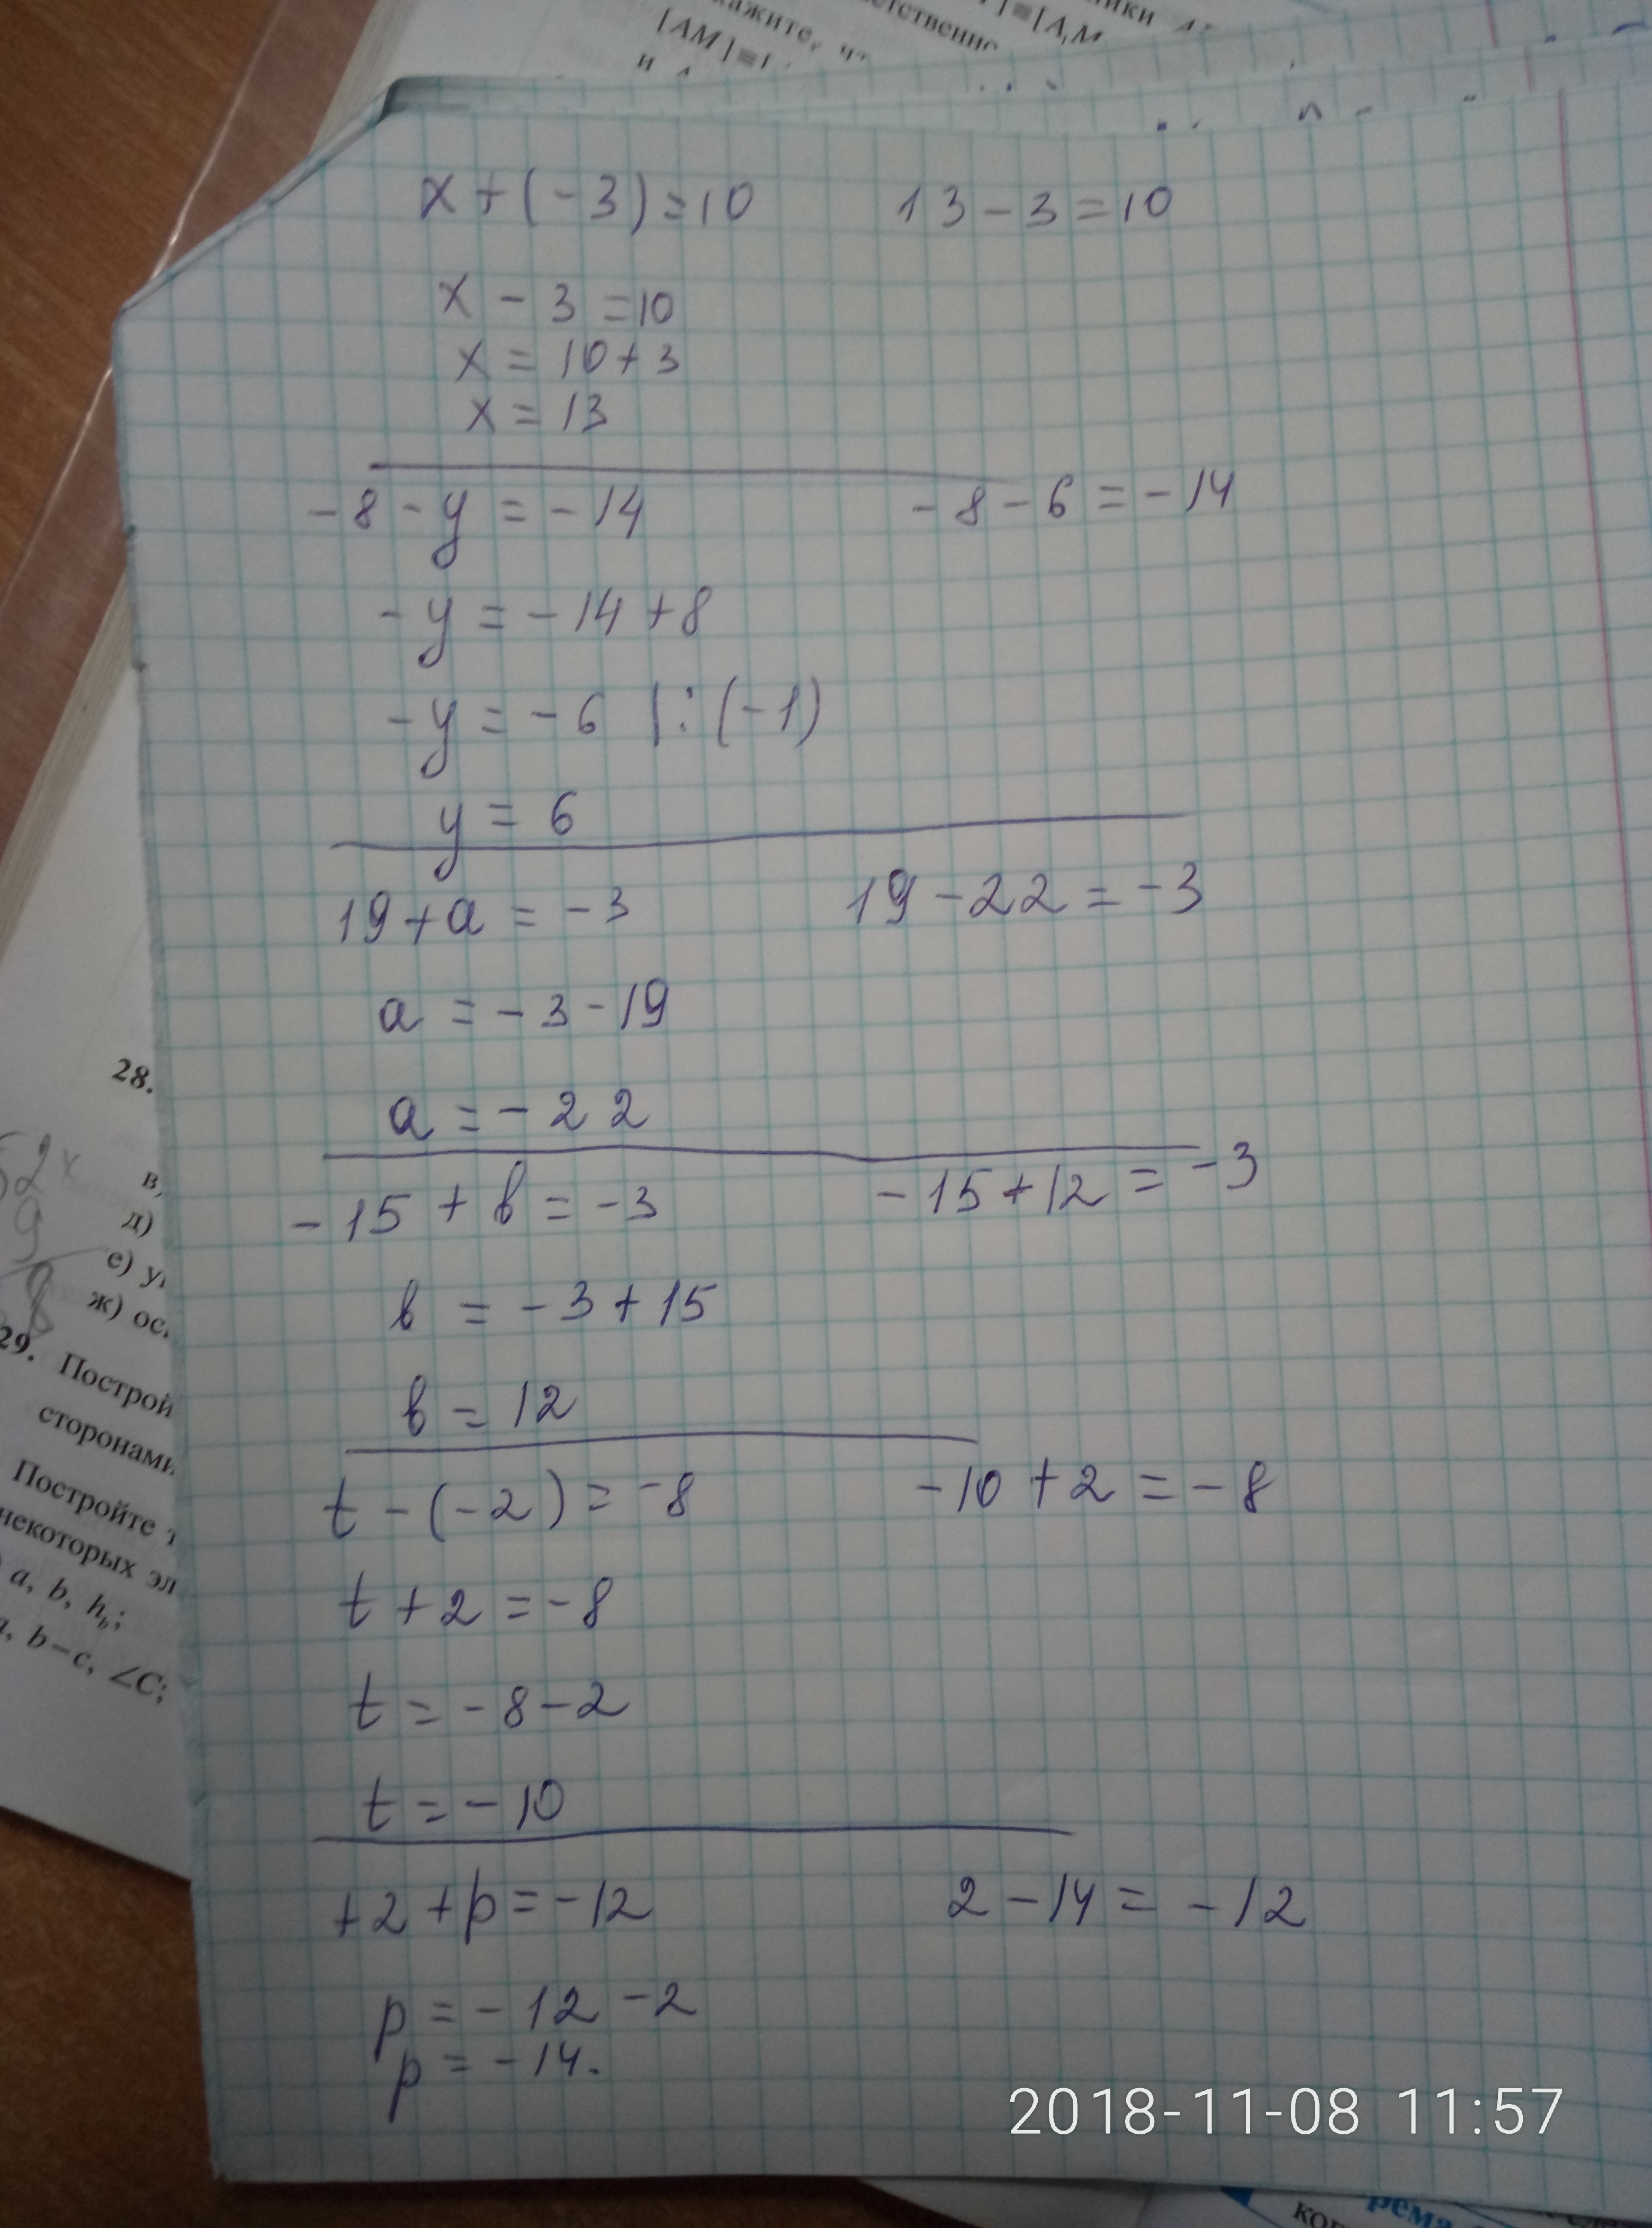 X2 8x 15 x 3. Ответ 8= x=2. X^3-6x^2+3x+21=0 решение. 8/X-3-10/X 2. X-3 ответ.